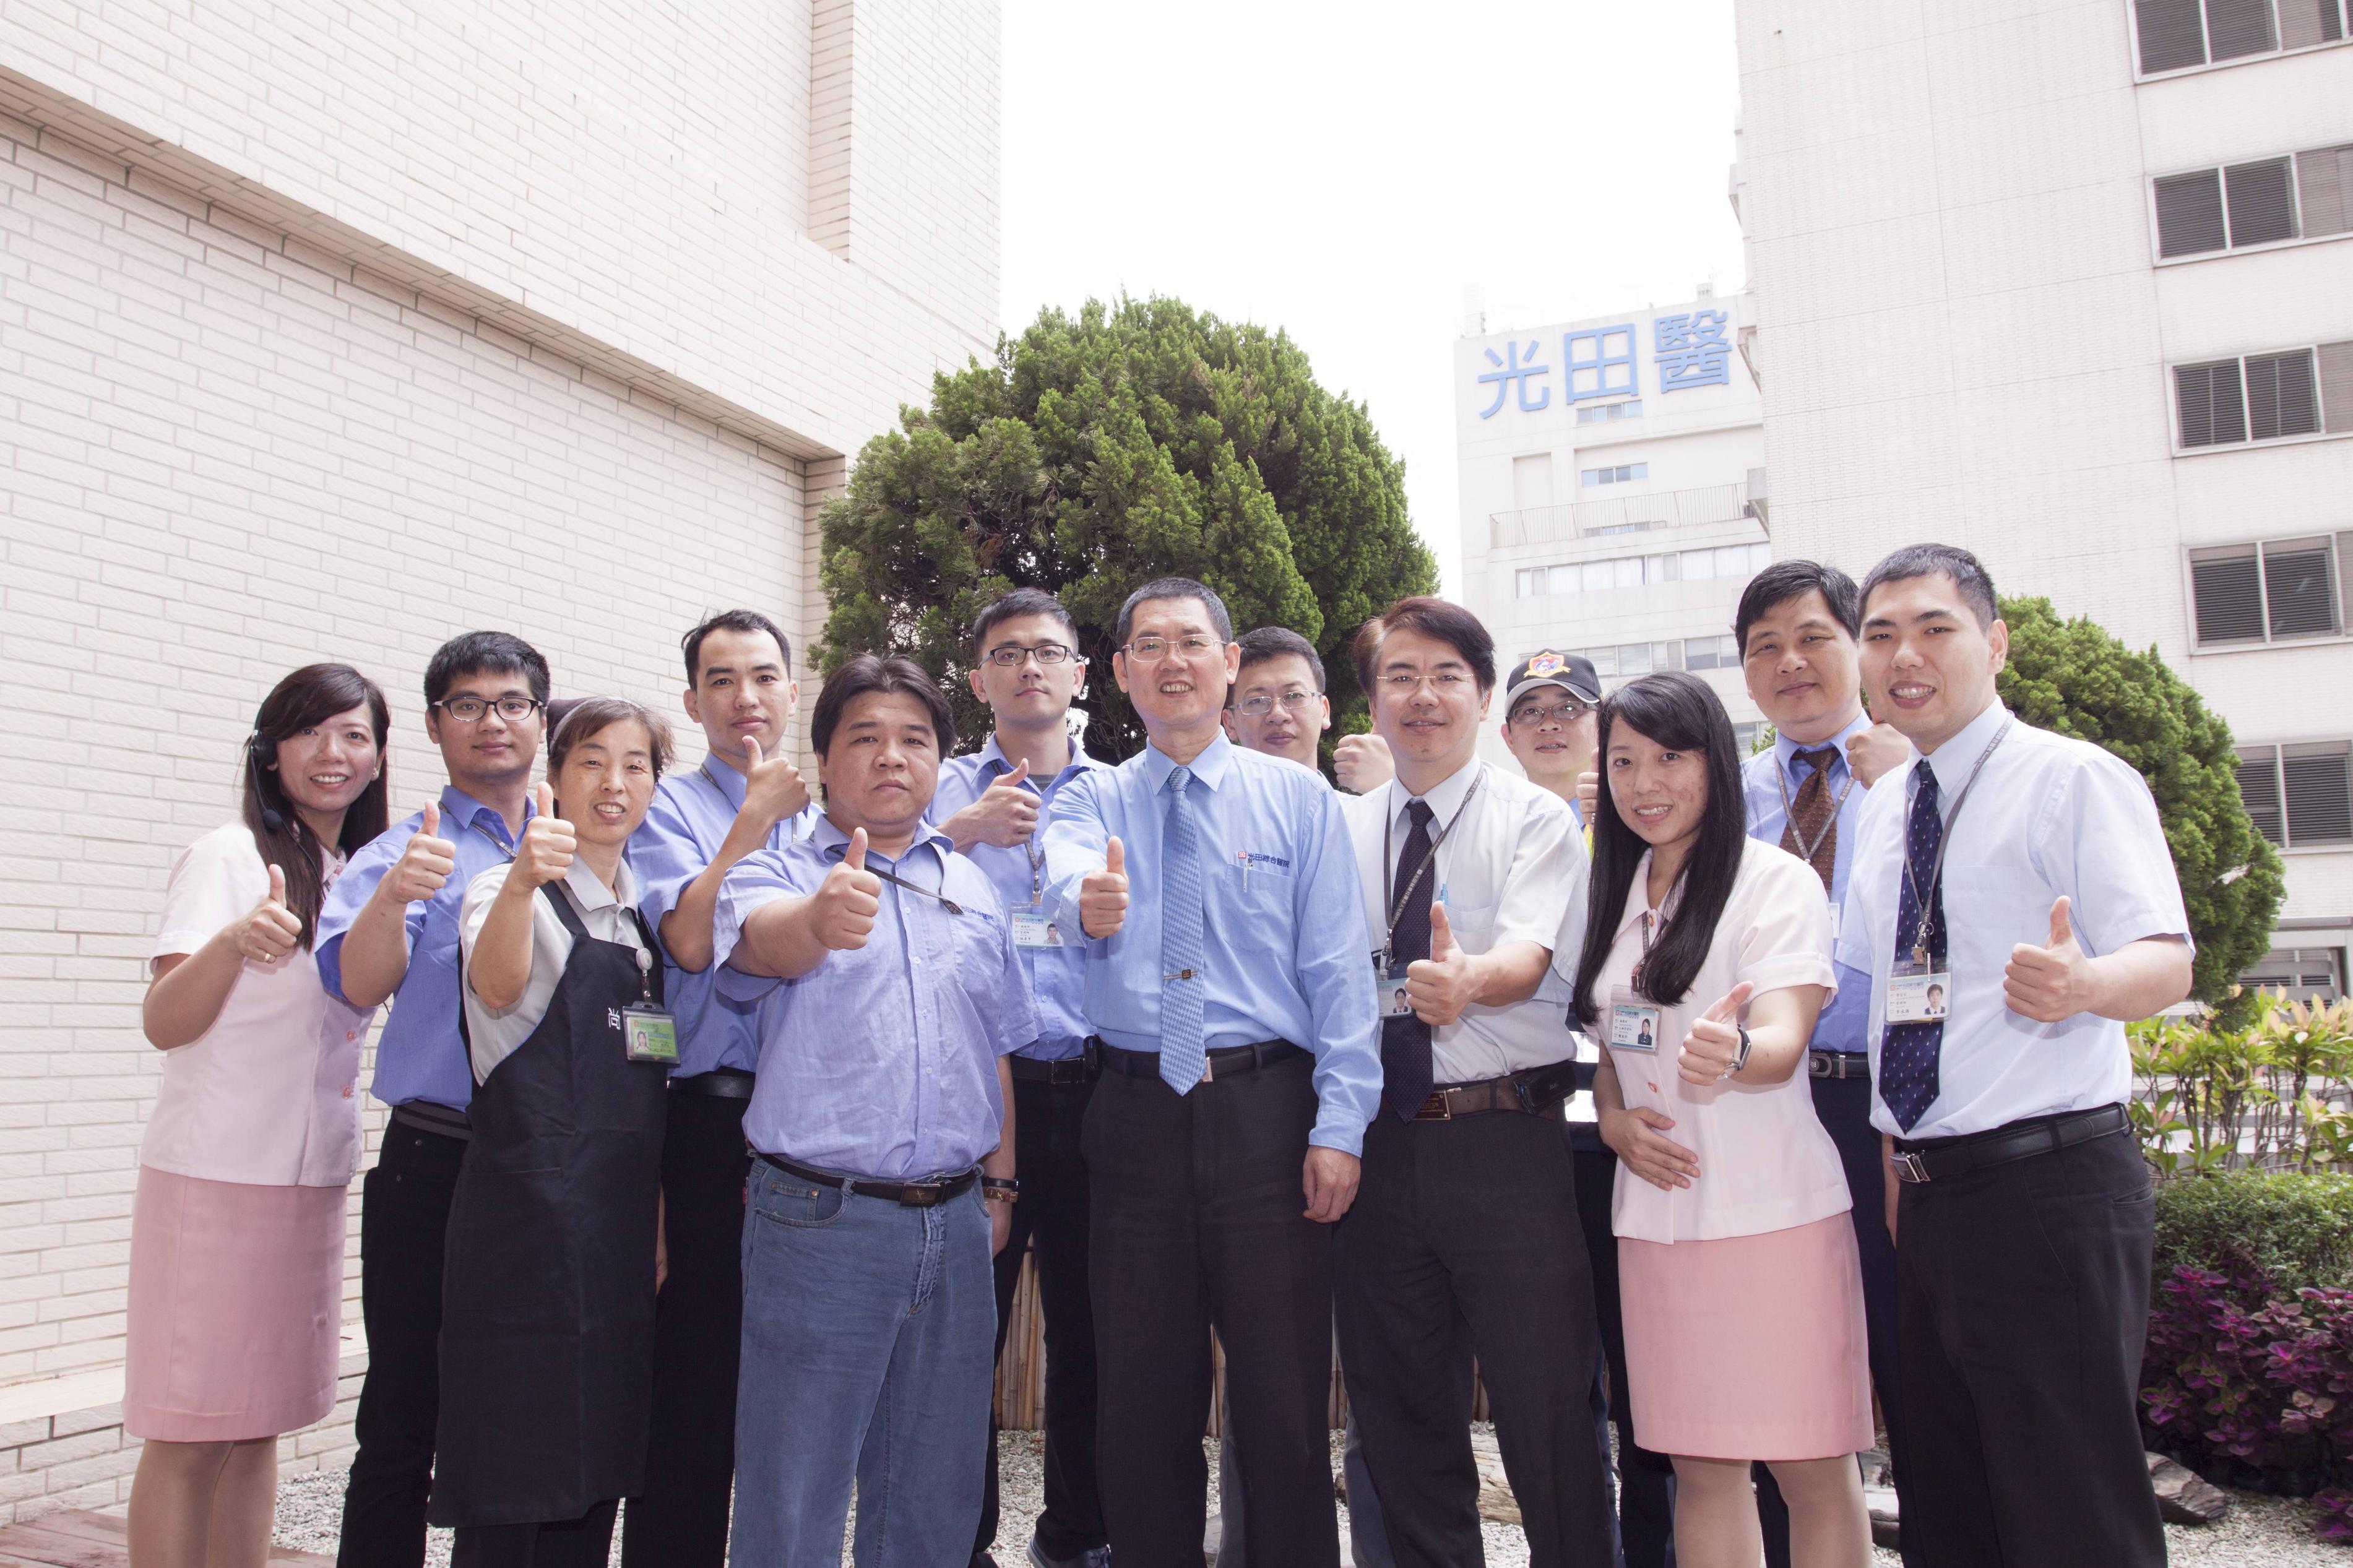 節能團隊是光田綜合醫院達成「綠色醫院」的幕後推手